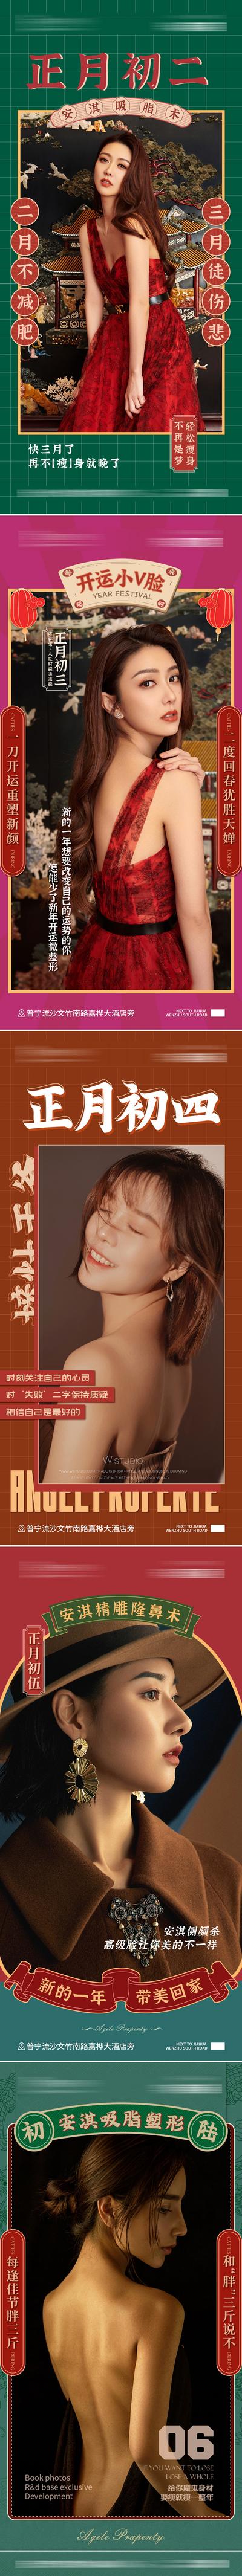 南门网 海报 医美 中国传统节日 春节 人物 复古 系列